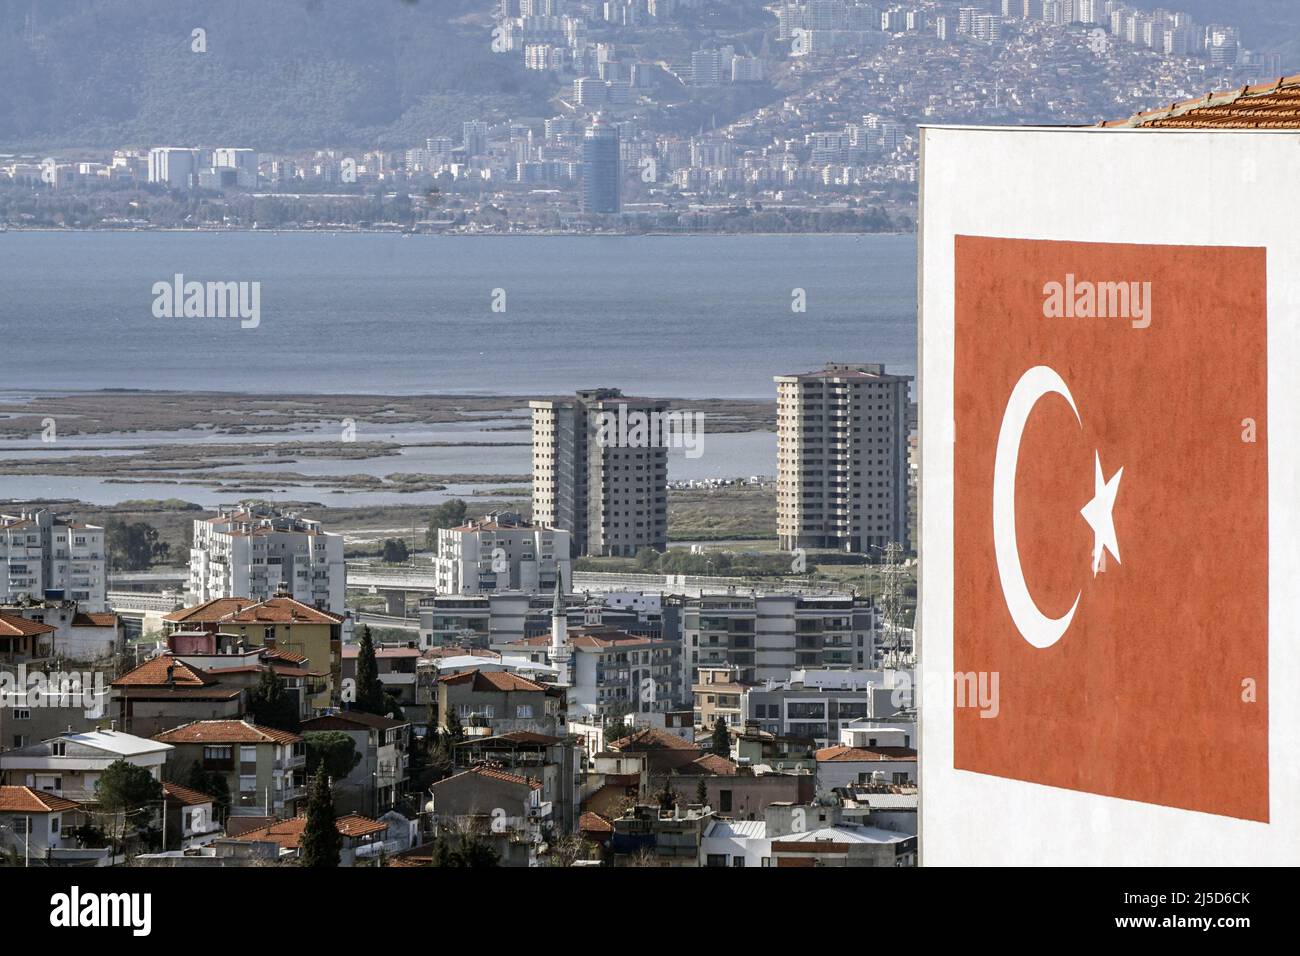 Izmir, Turquie, 20.03.2022 - Un grand drapeau turc est exposé sur le mur d'une maison à Izmir. L'économie turque a connu une forte croissance en 2021, à 11 pour cent. Cependant, l'économie est confrontée à une année difficile en 2022 en raison de l'inflation élevée et de la guerre en Ukraine. [traduction automatique] Banque D'Images